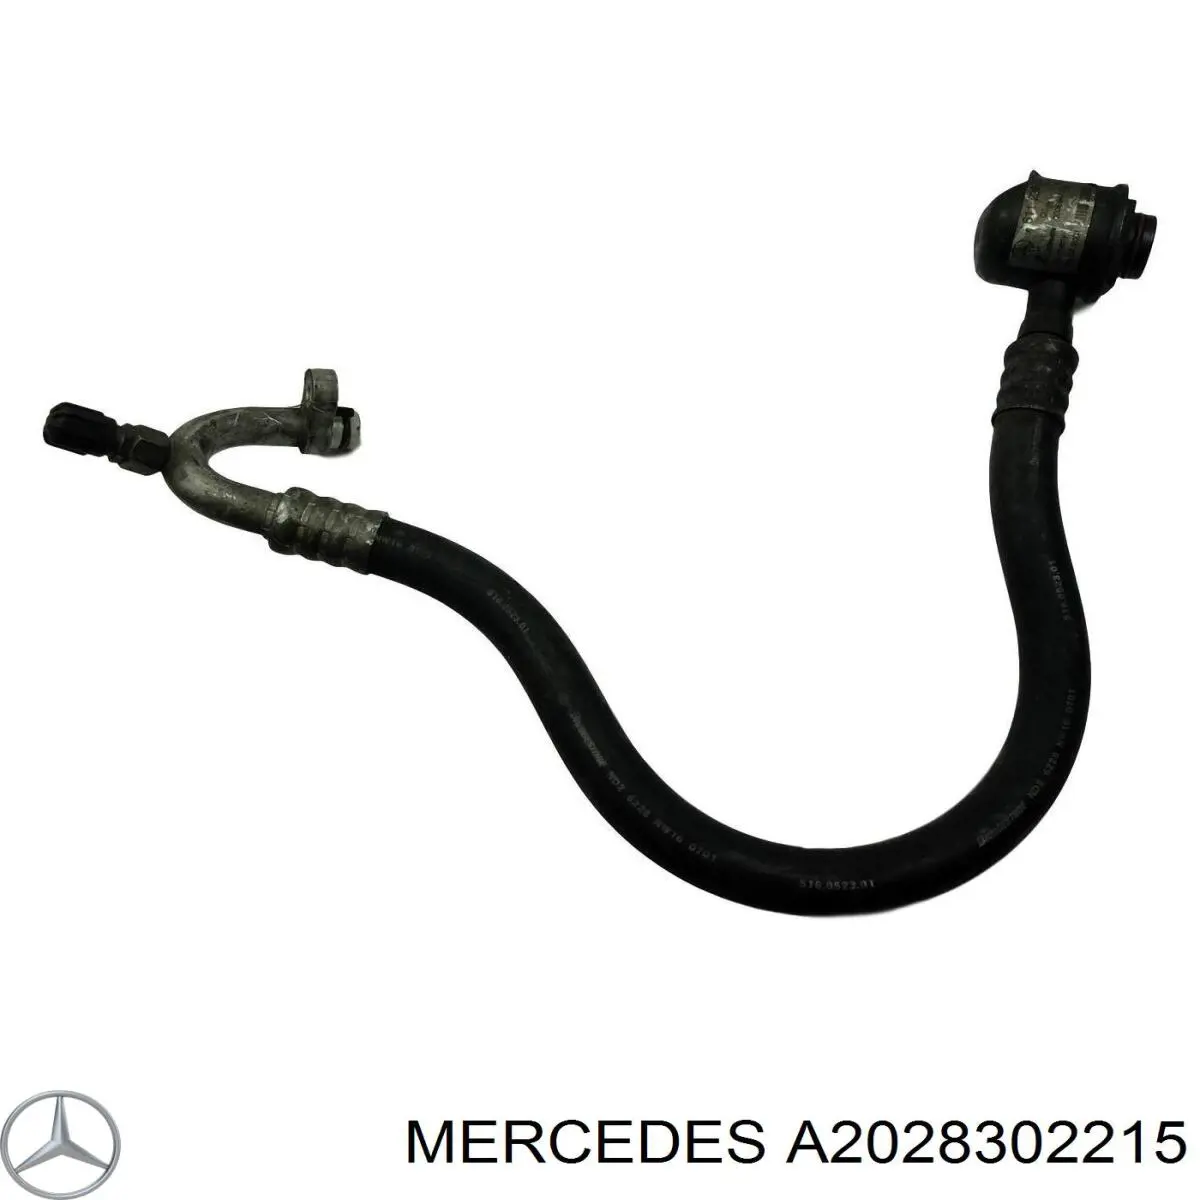 A2028302215 Mercedes mangueira de aparelho de ar condicionado, desde o vaporizador até o compressor